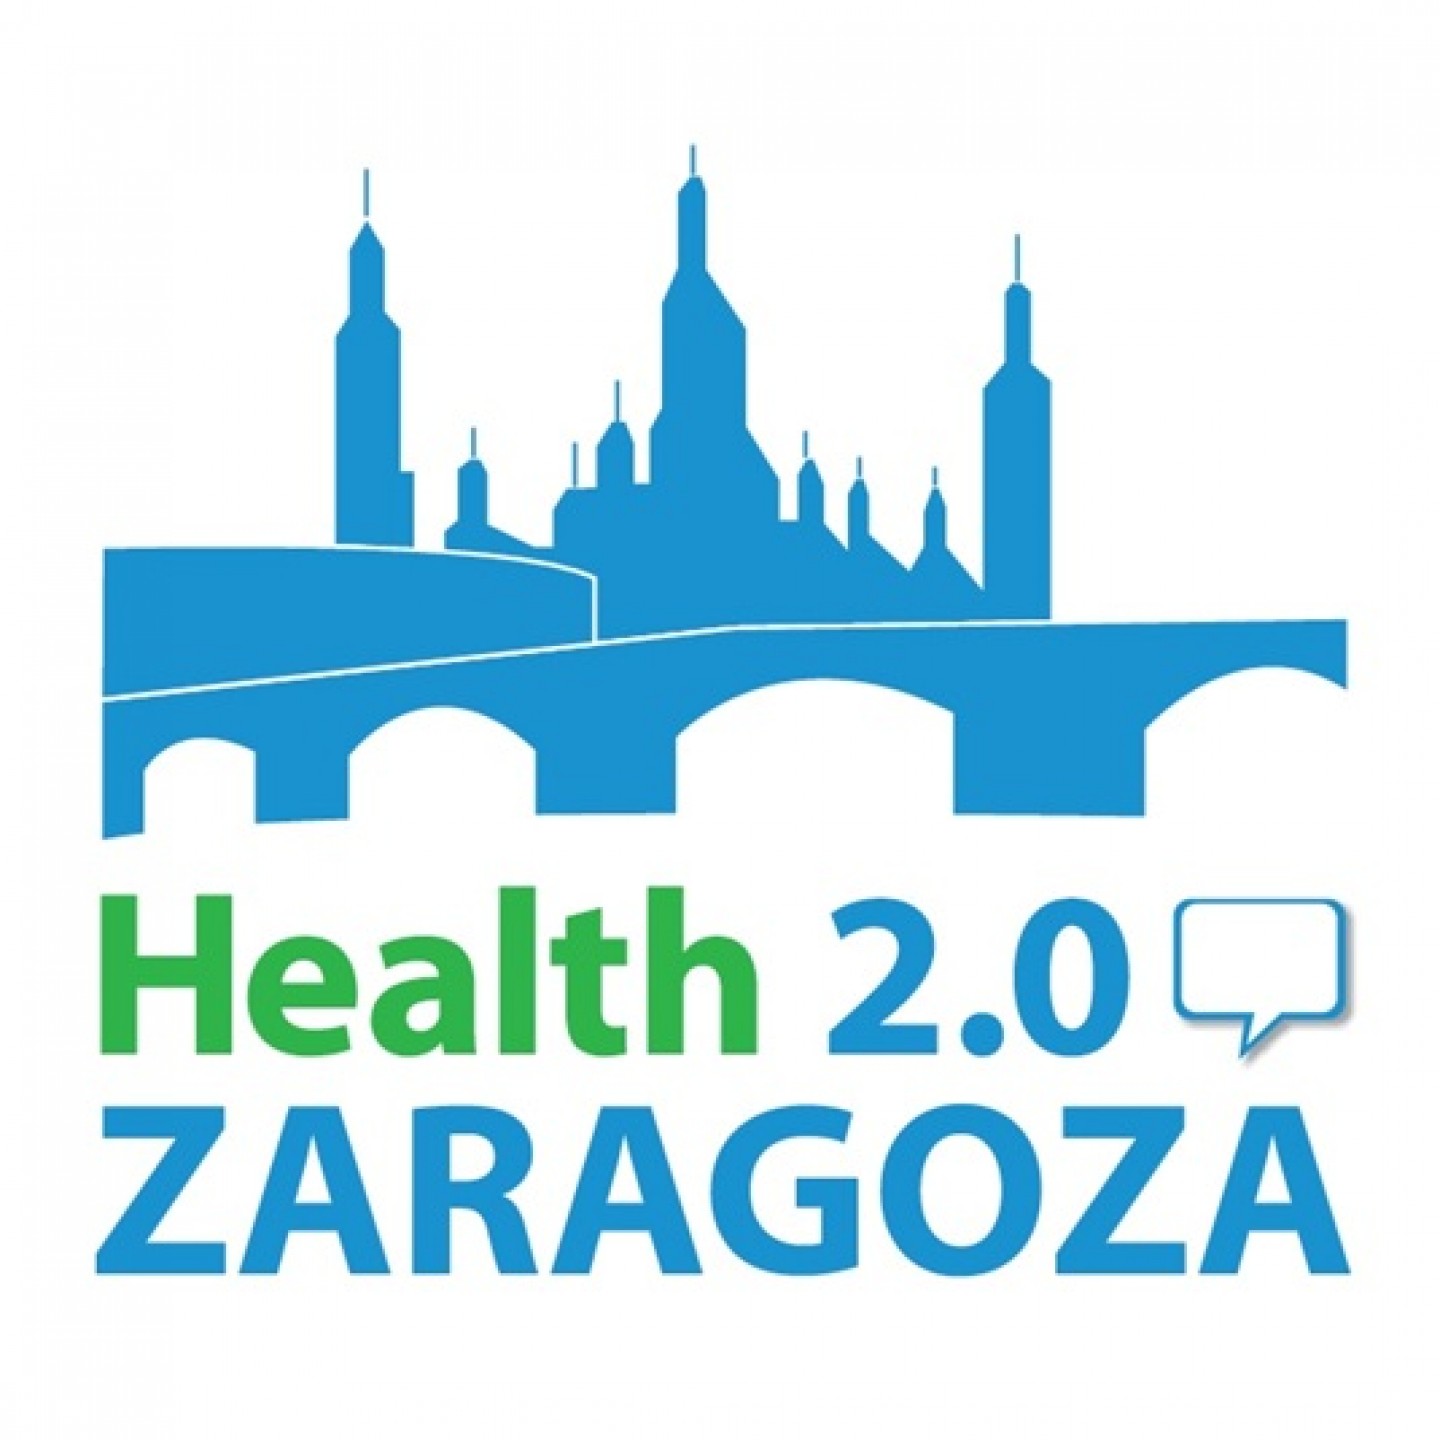 Arranca en Zaragoza el movimiento Health 2.0, un punto de encuentro entre la tecnología, la salud y el emprendimiento